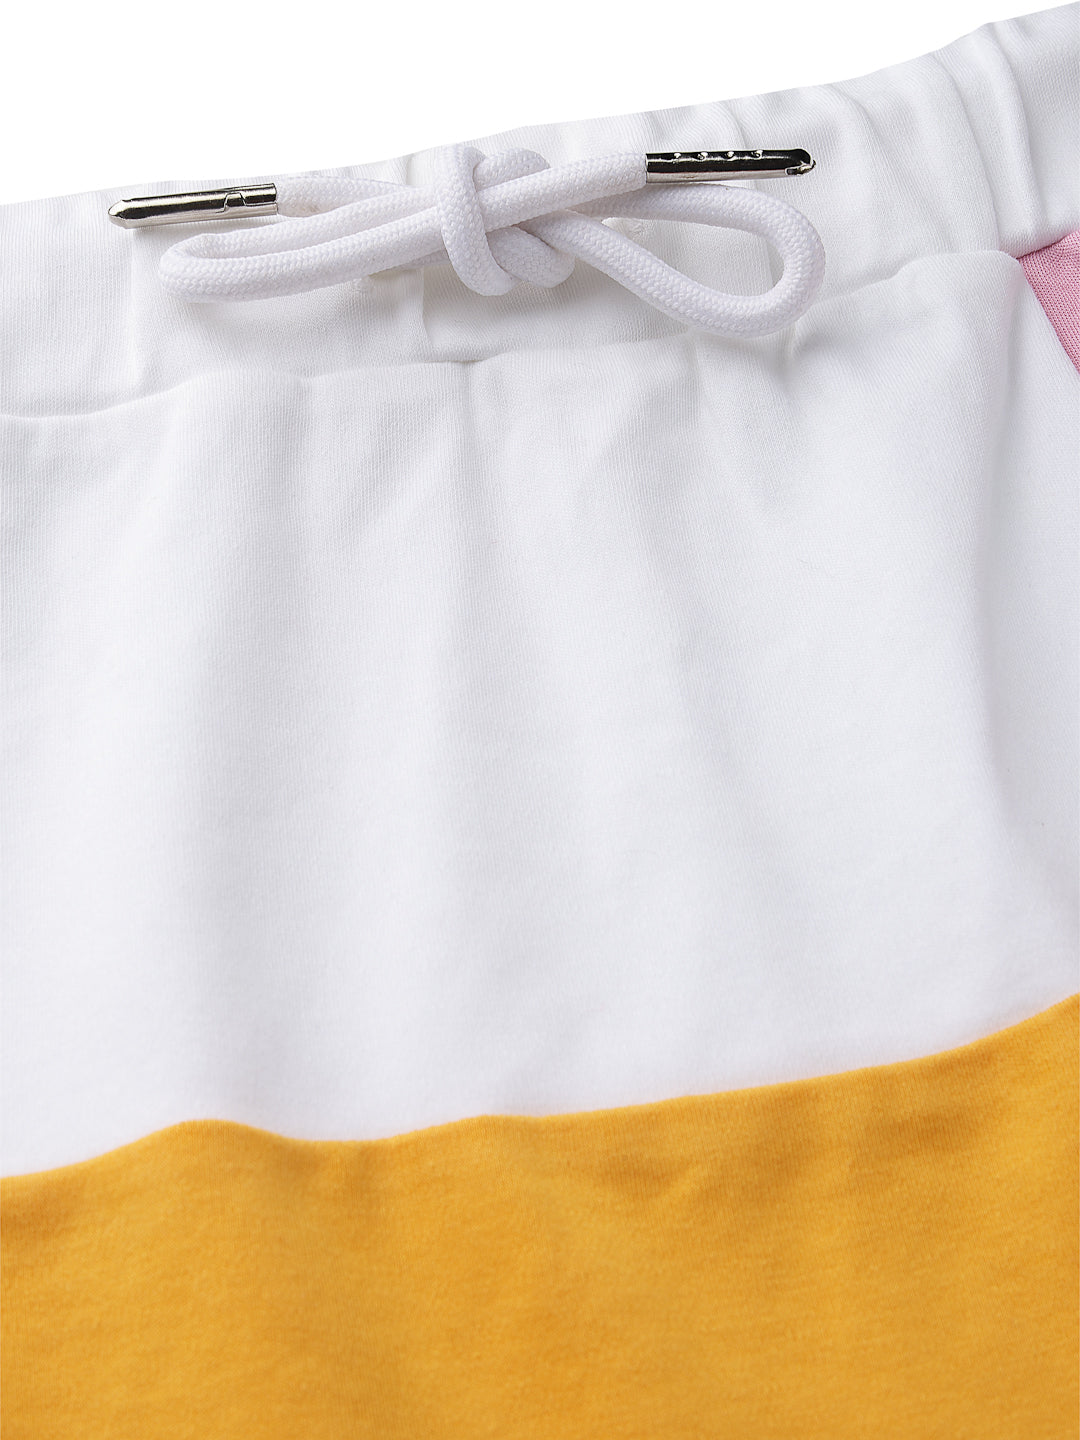 Stylish white cut & Sew 100% cotton skirt